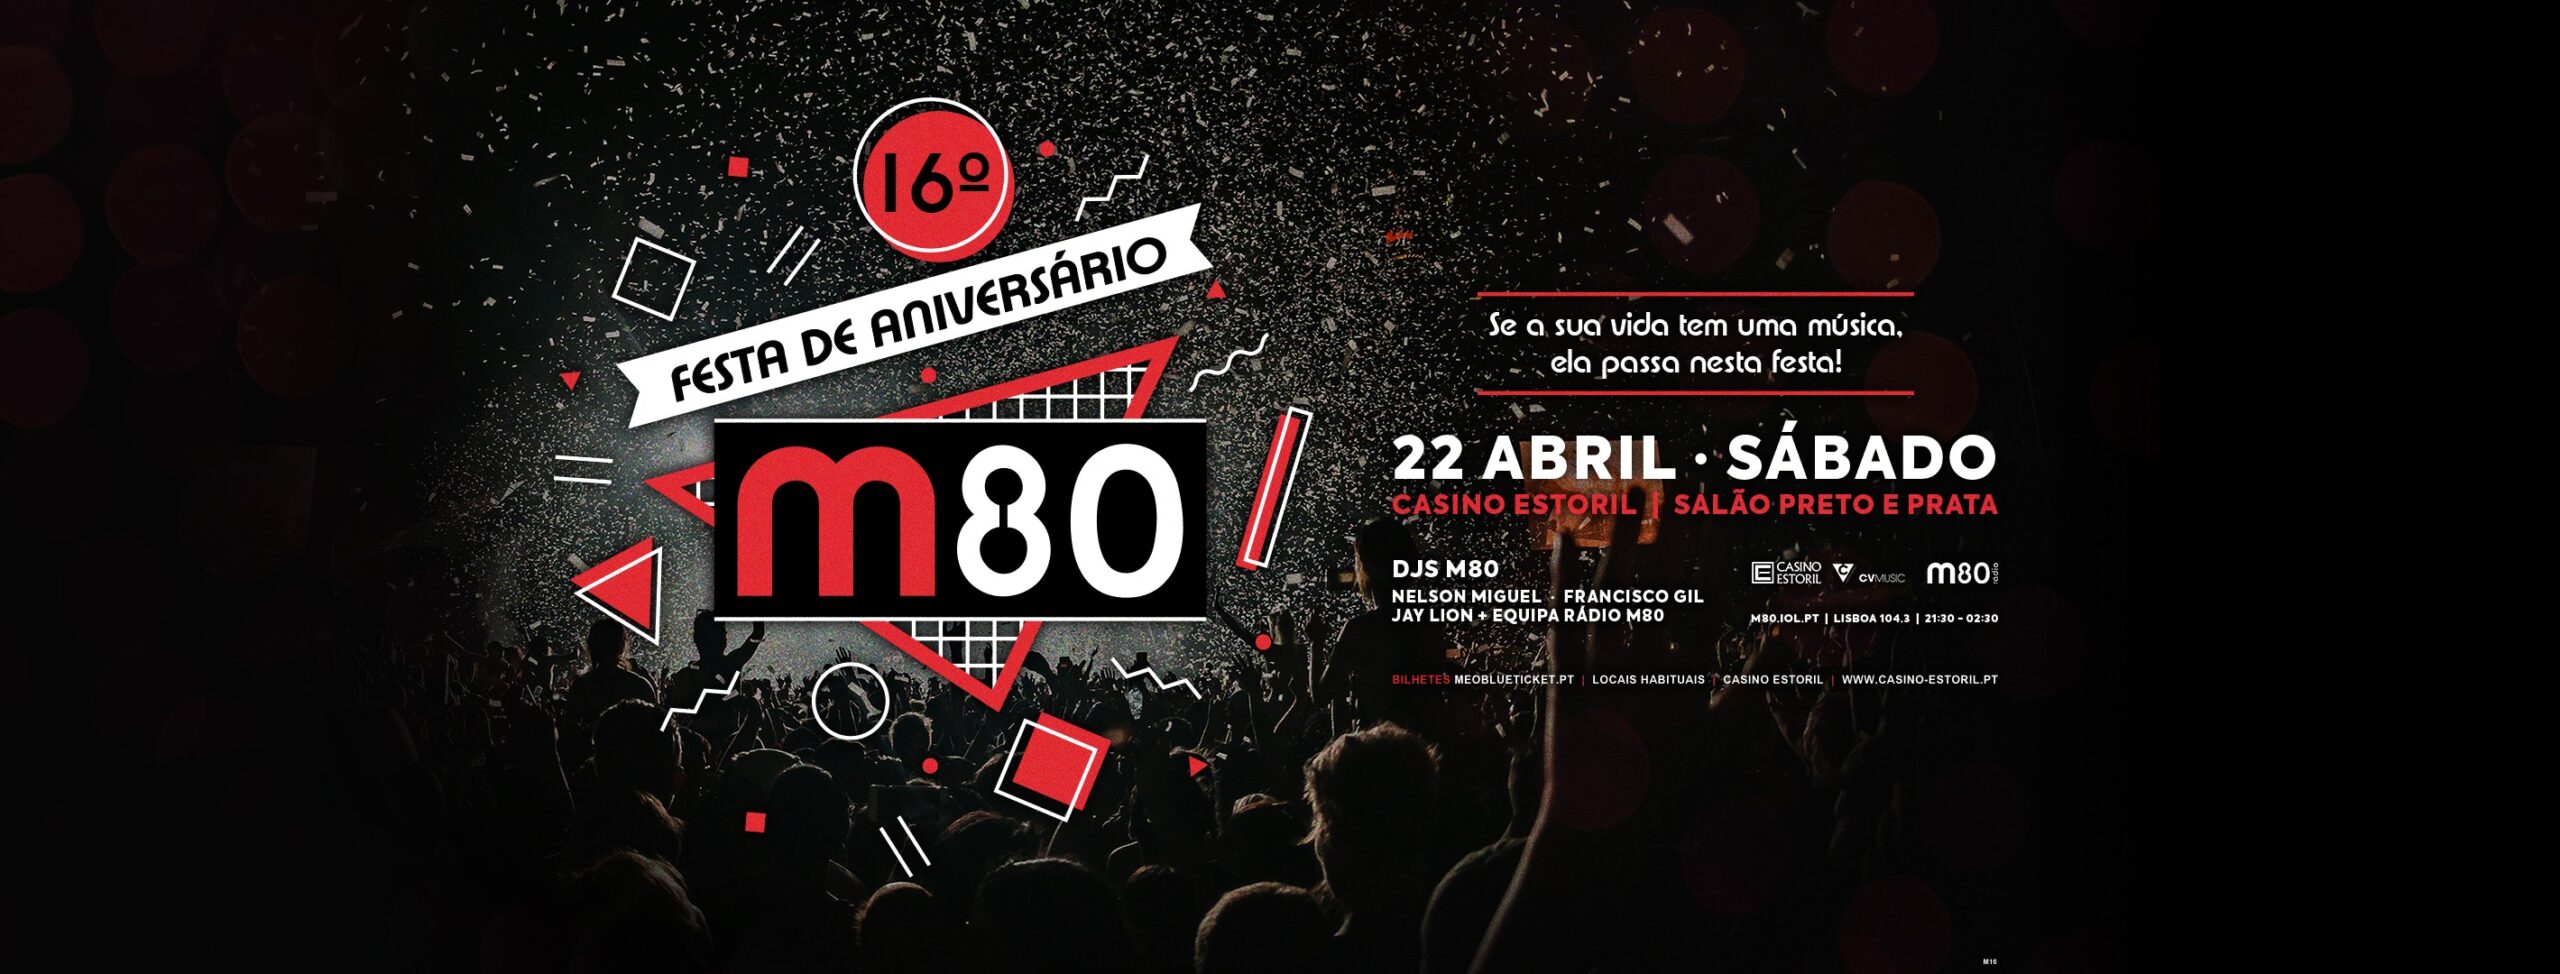 Festa M80 - Casino Estoril